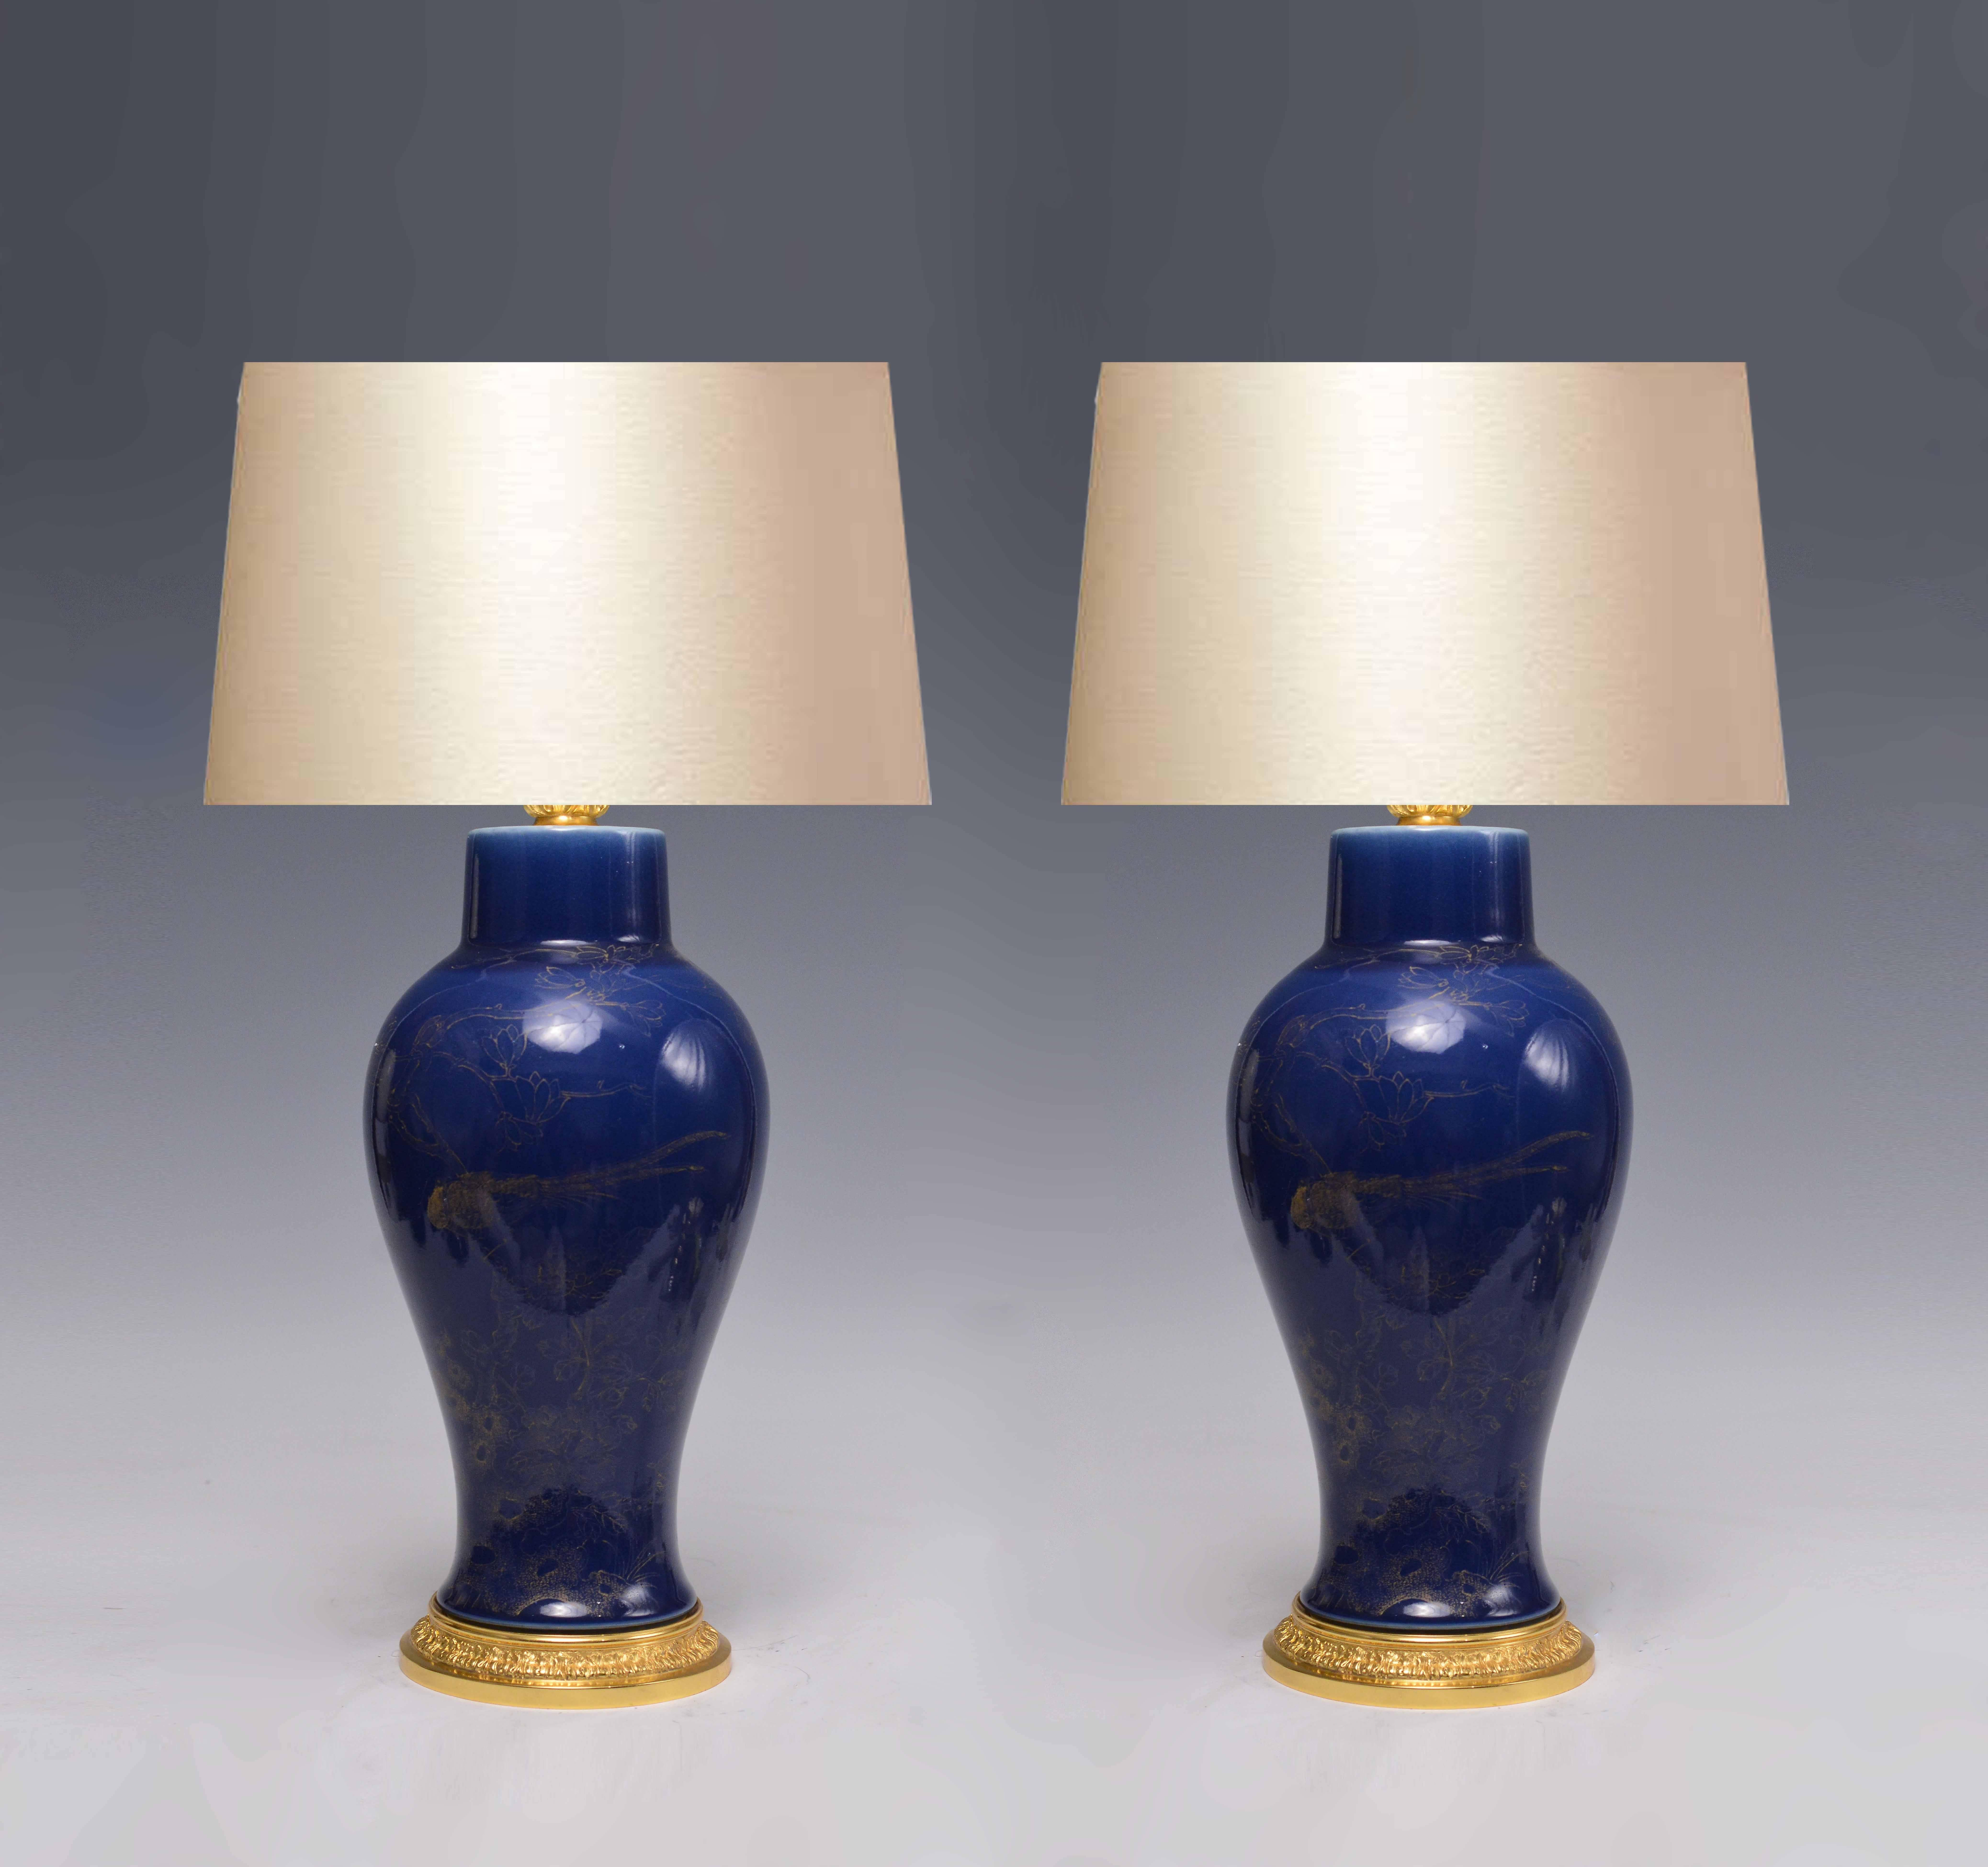 Ein Paar dunkelblaue Vasenlampen aus Porzellan mit Blumenblüten- und Vogeldekor und vergoldeten Messingsockeln.
Zur Porzellanvase: 17.5 in H.
(Lampenschirm nicht enthalten)